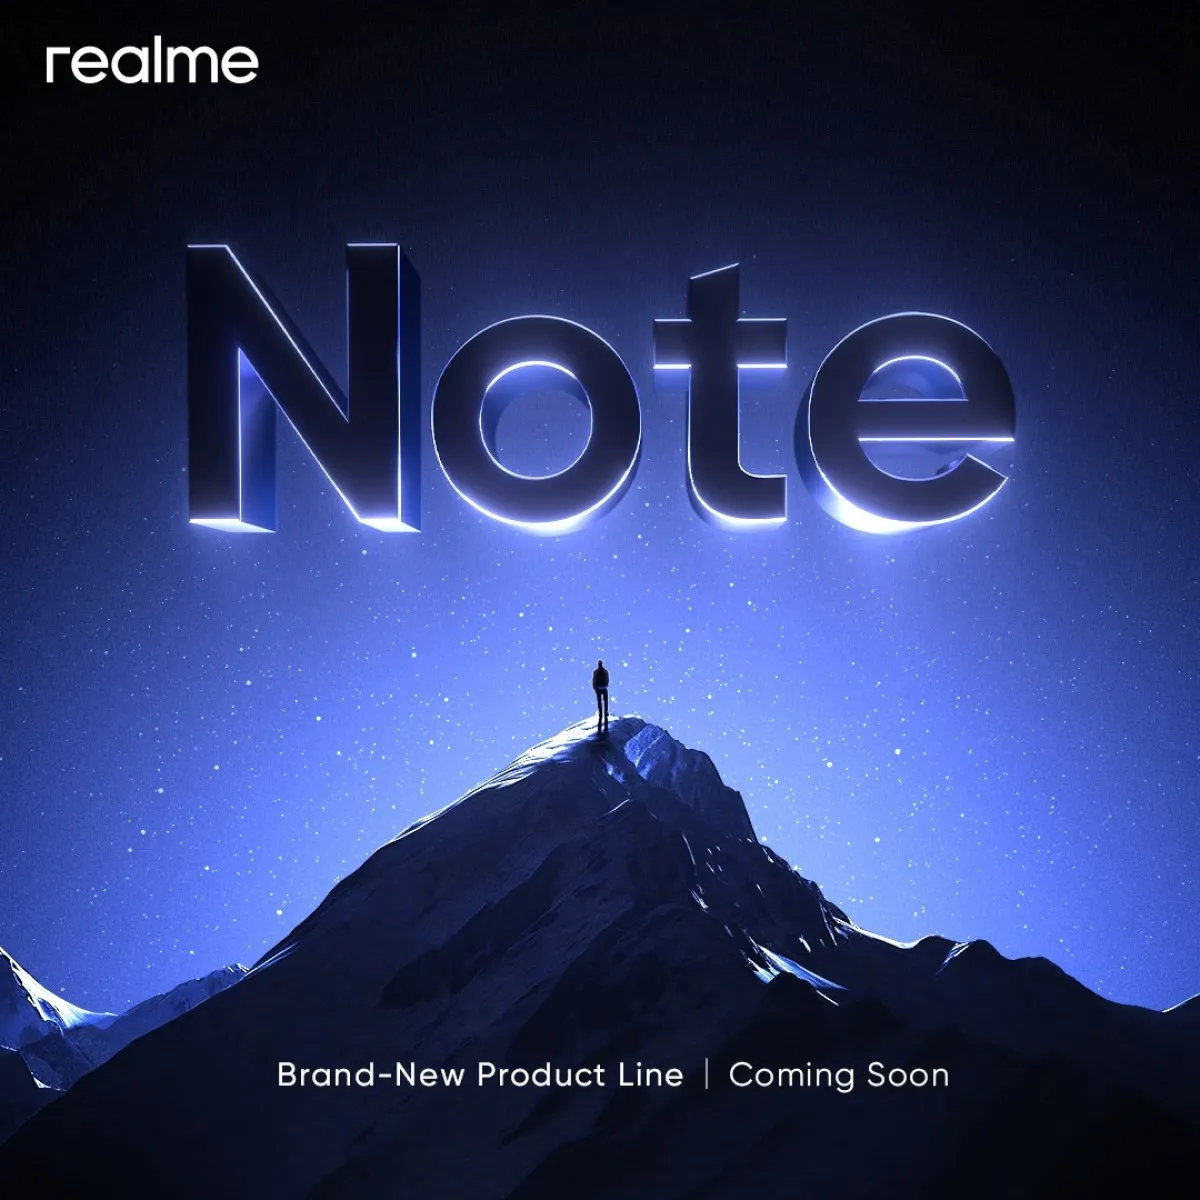 realme chuẩn bị ra mắt realme Note 1 mới với màn hình OLED và camera 108MP